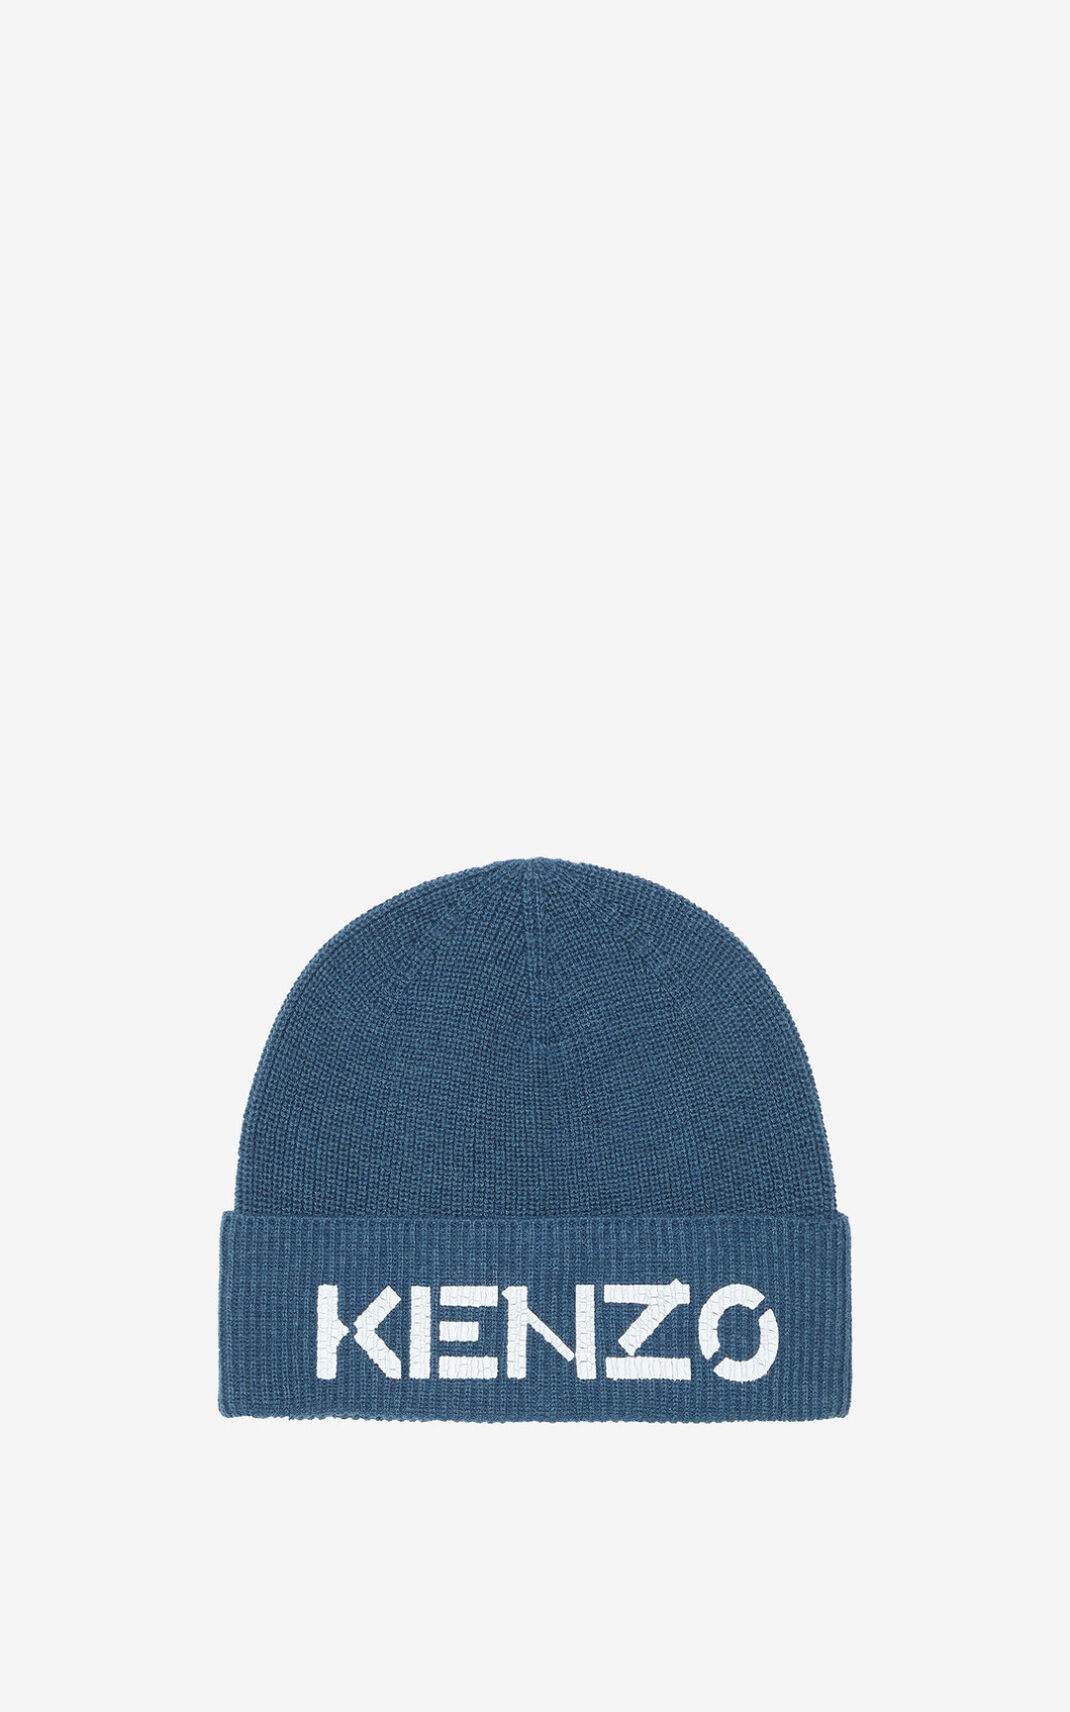 Kenzo Logo knit Beanie Blue For Mens 4563CGQRP